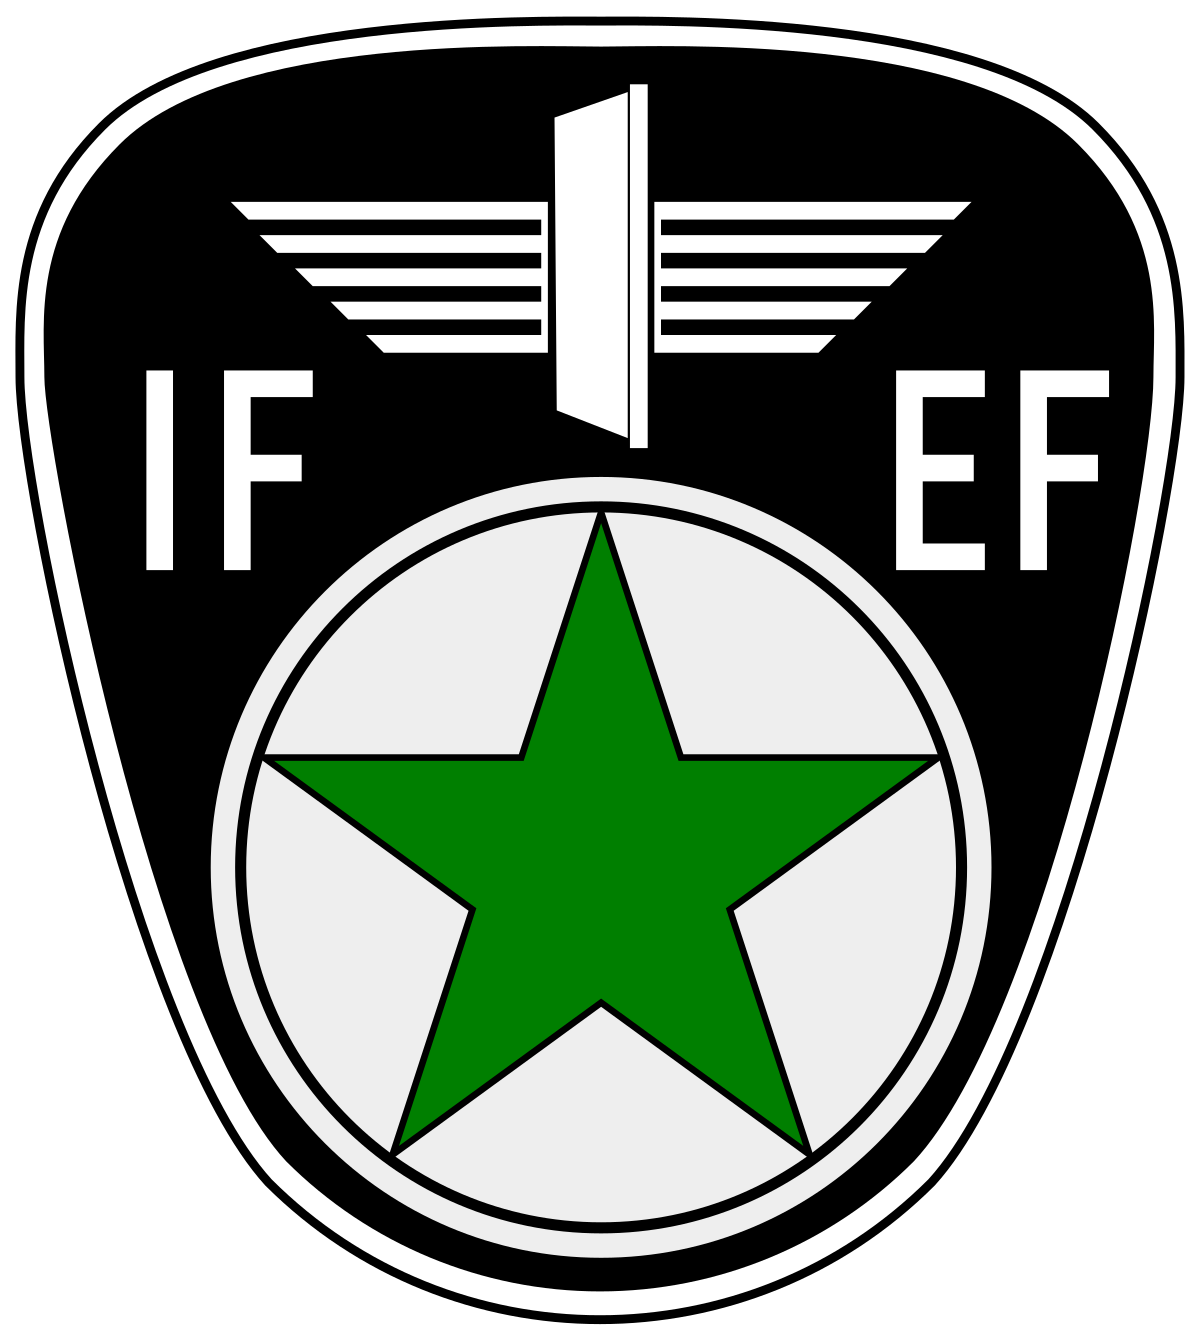 File:Ilera logo.svg - Wikipedia